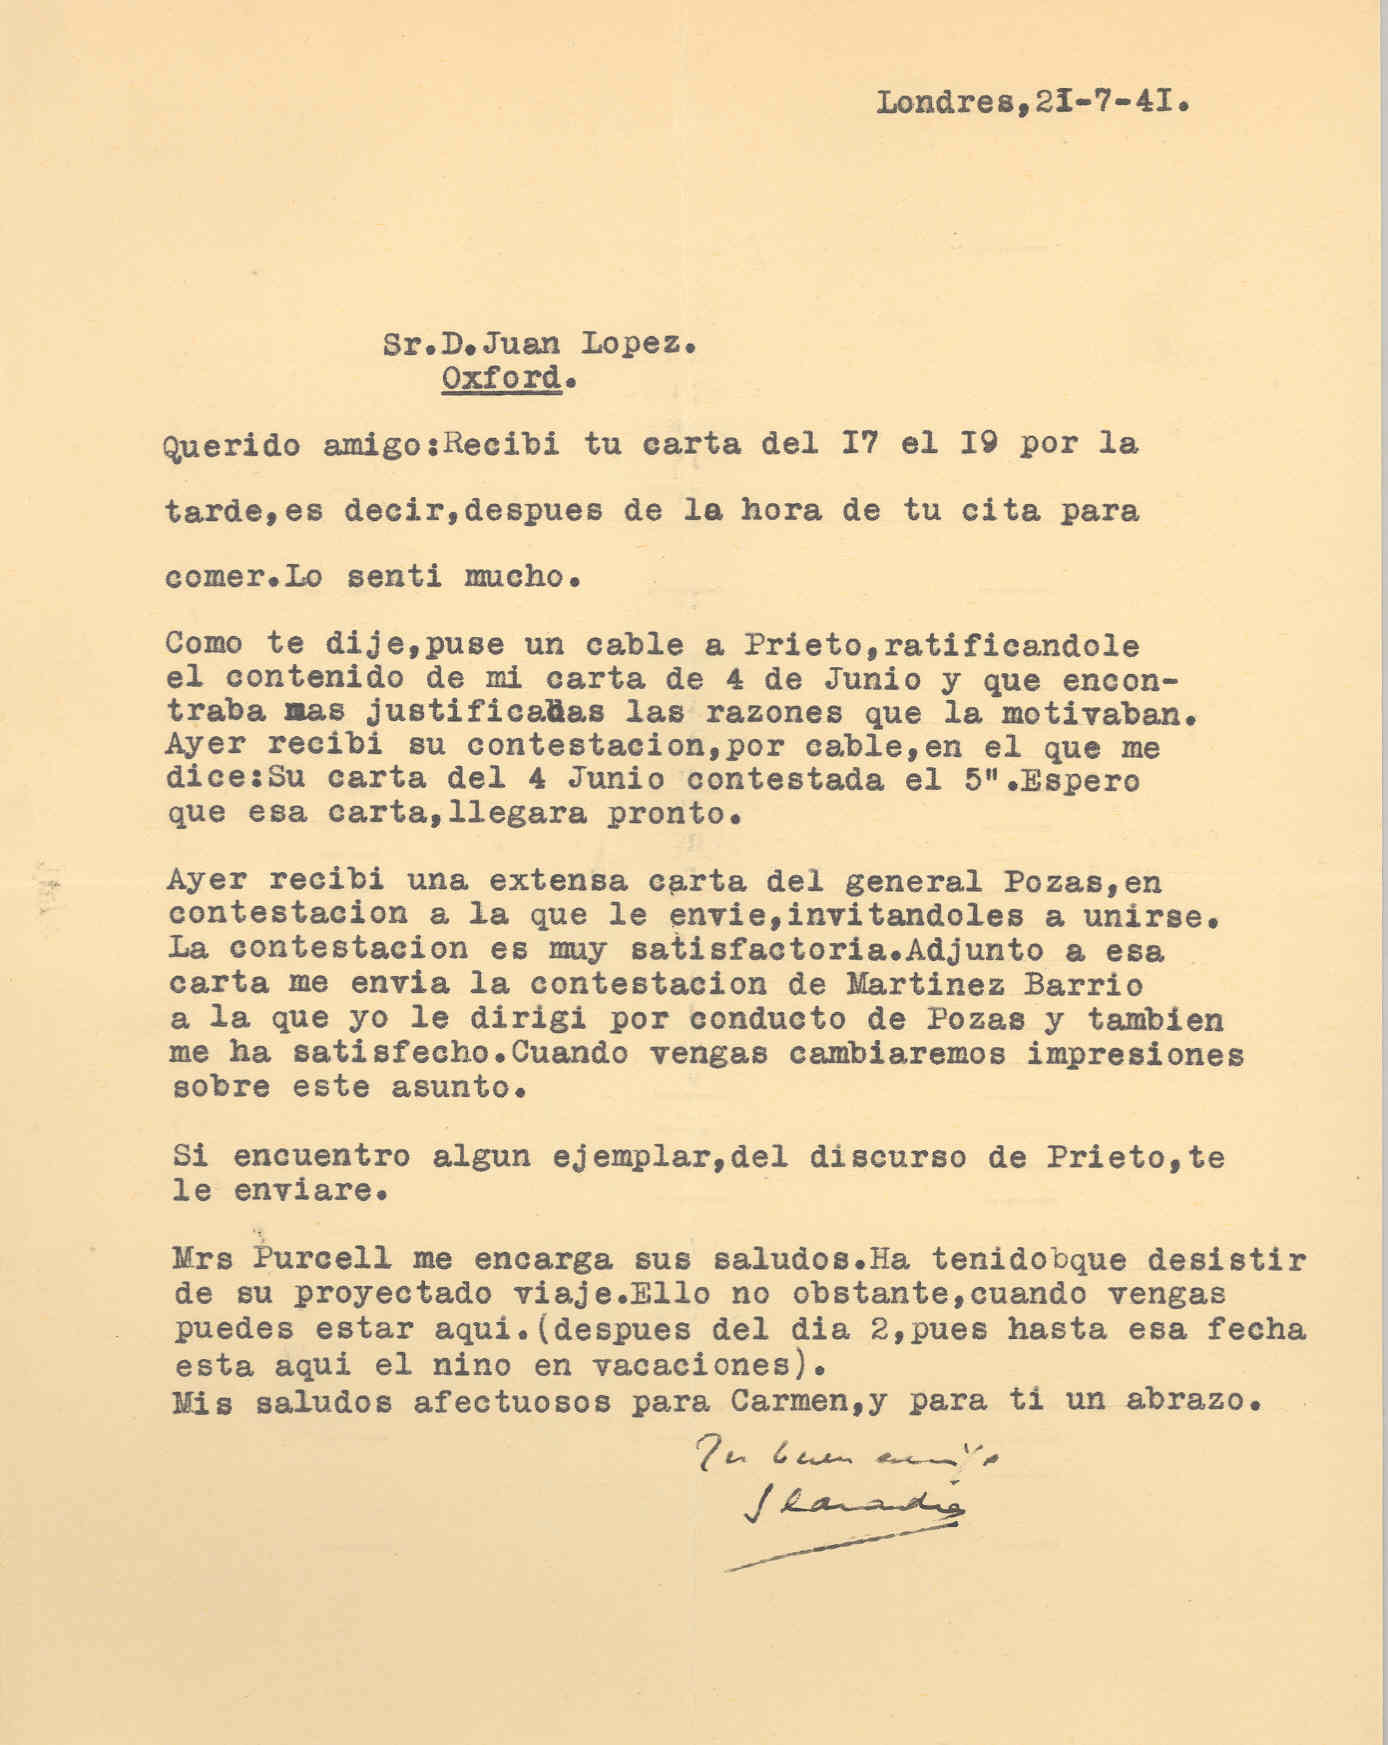 Carta de Segismundo Casado en la que habla de cartas enviadas y recibidas a Prieto, Martínez Barrio y al General Pozas, al cual invita a unirse.